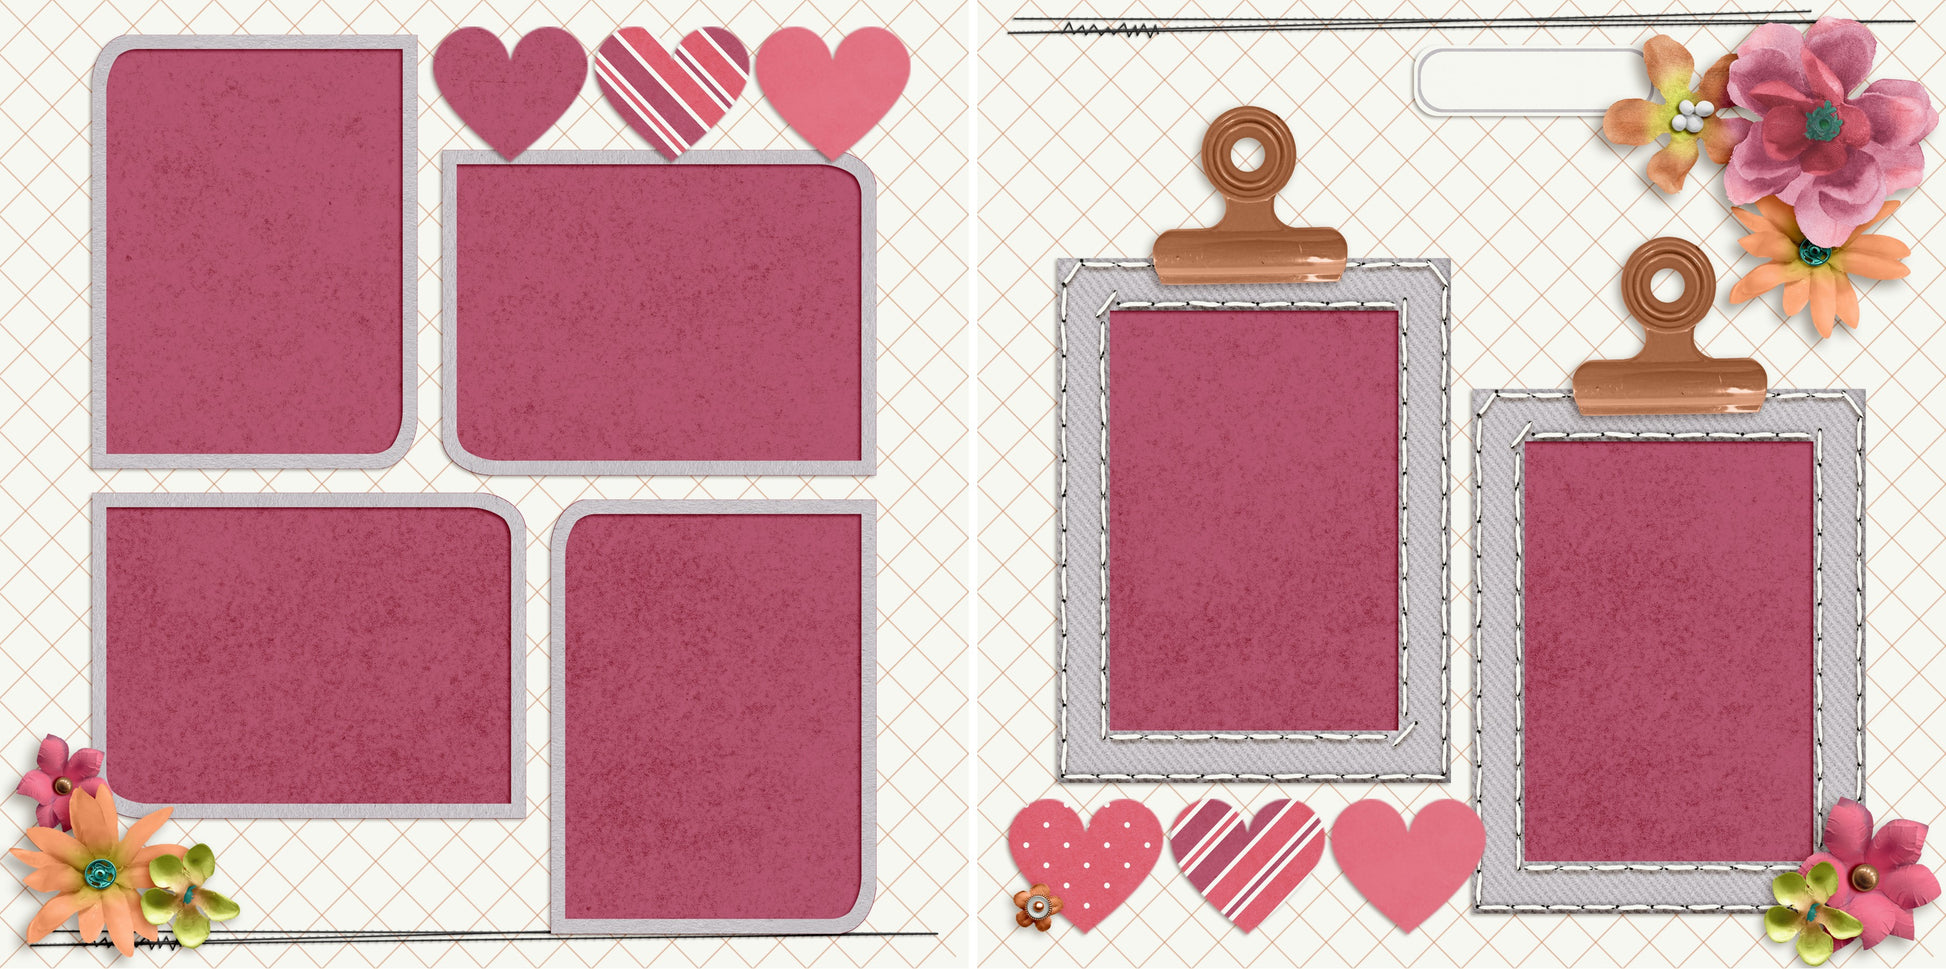 Pink Hearts - 4922 - EZscrapbooks Scrapbook Layouts Girls, Love - Valentine, Other